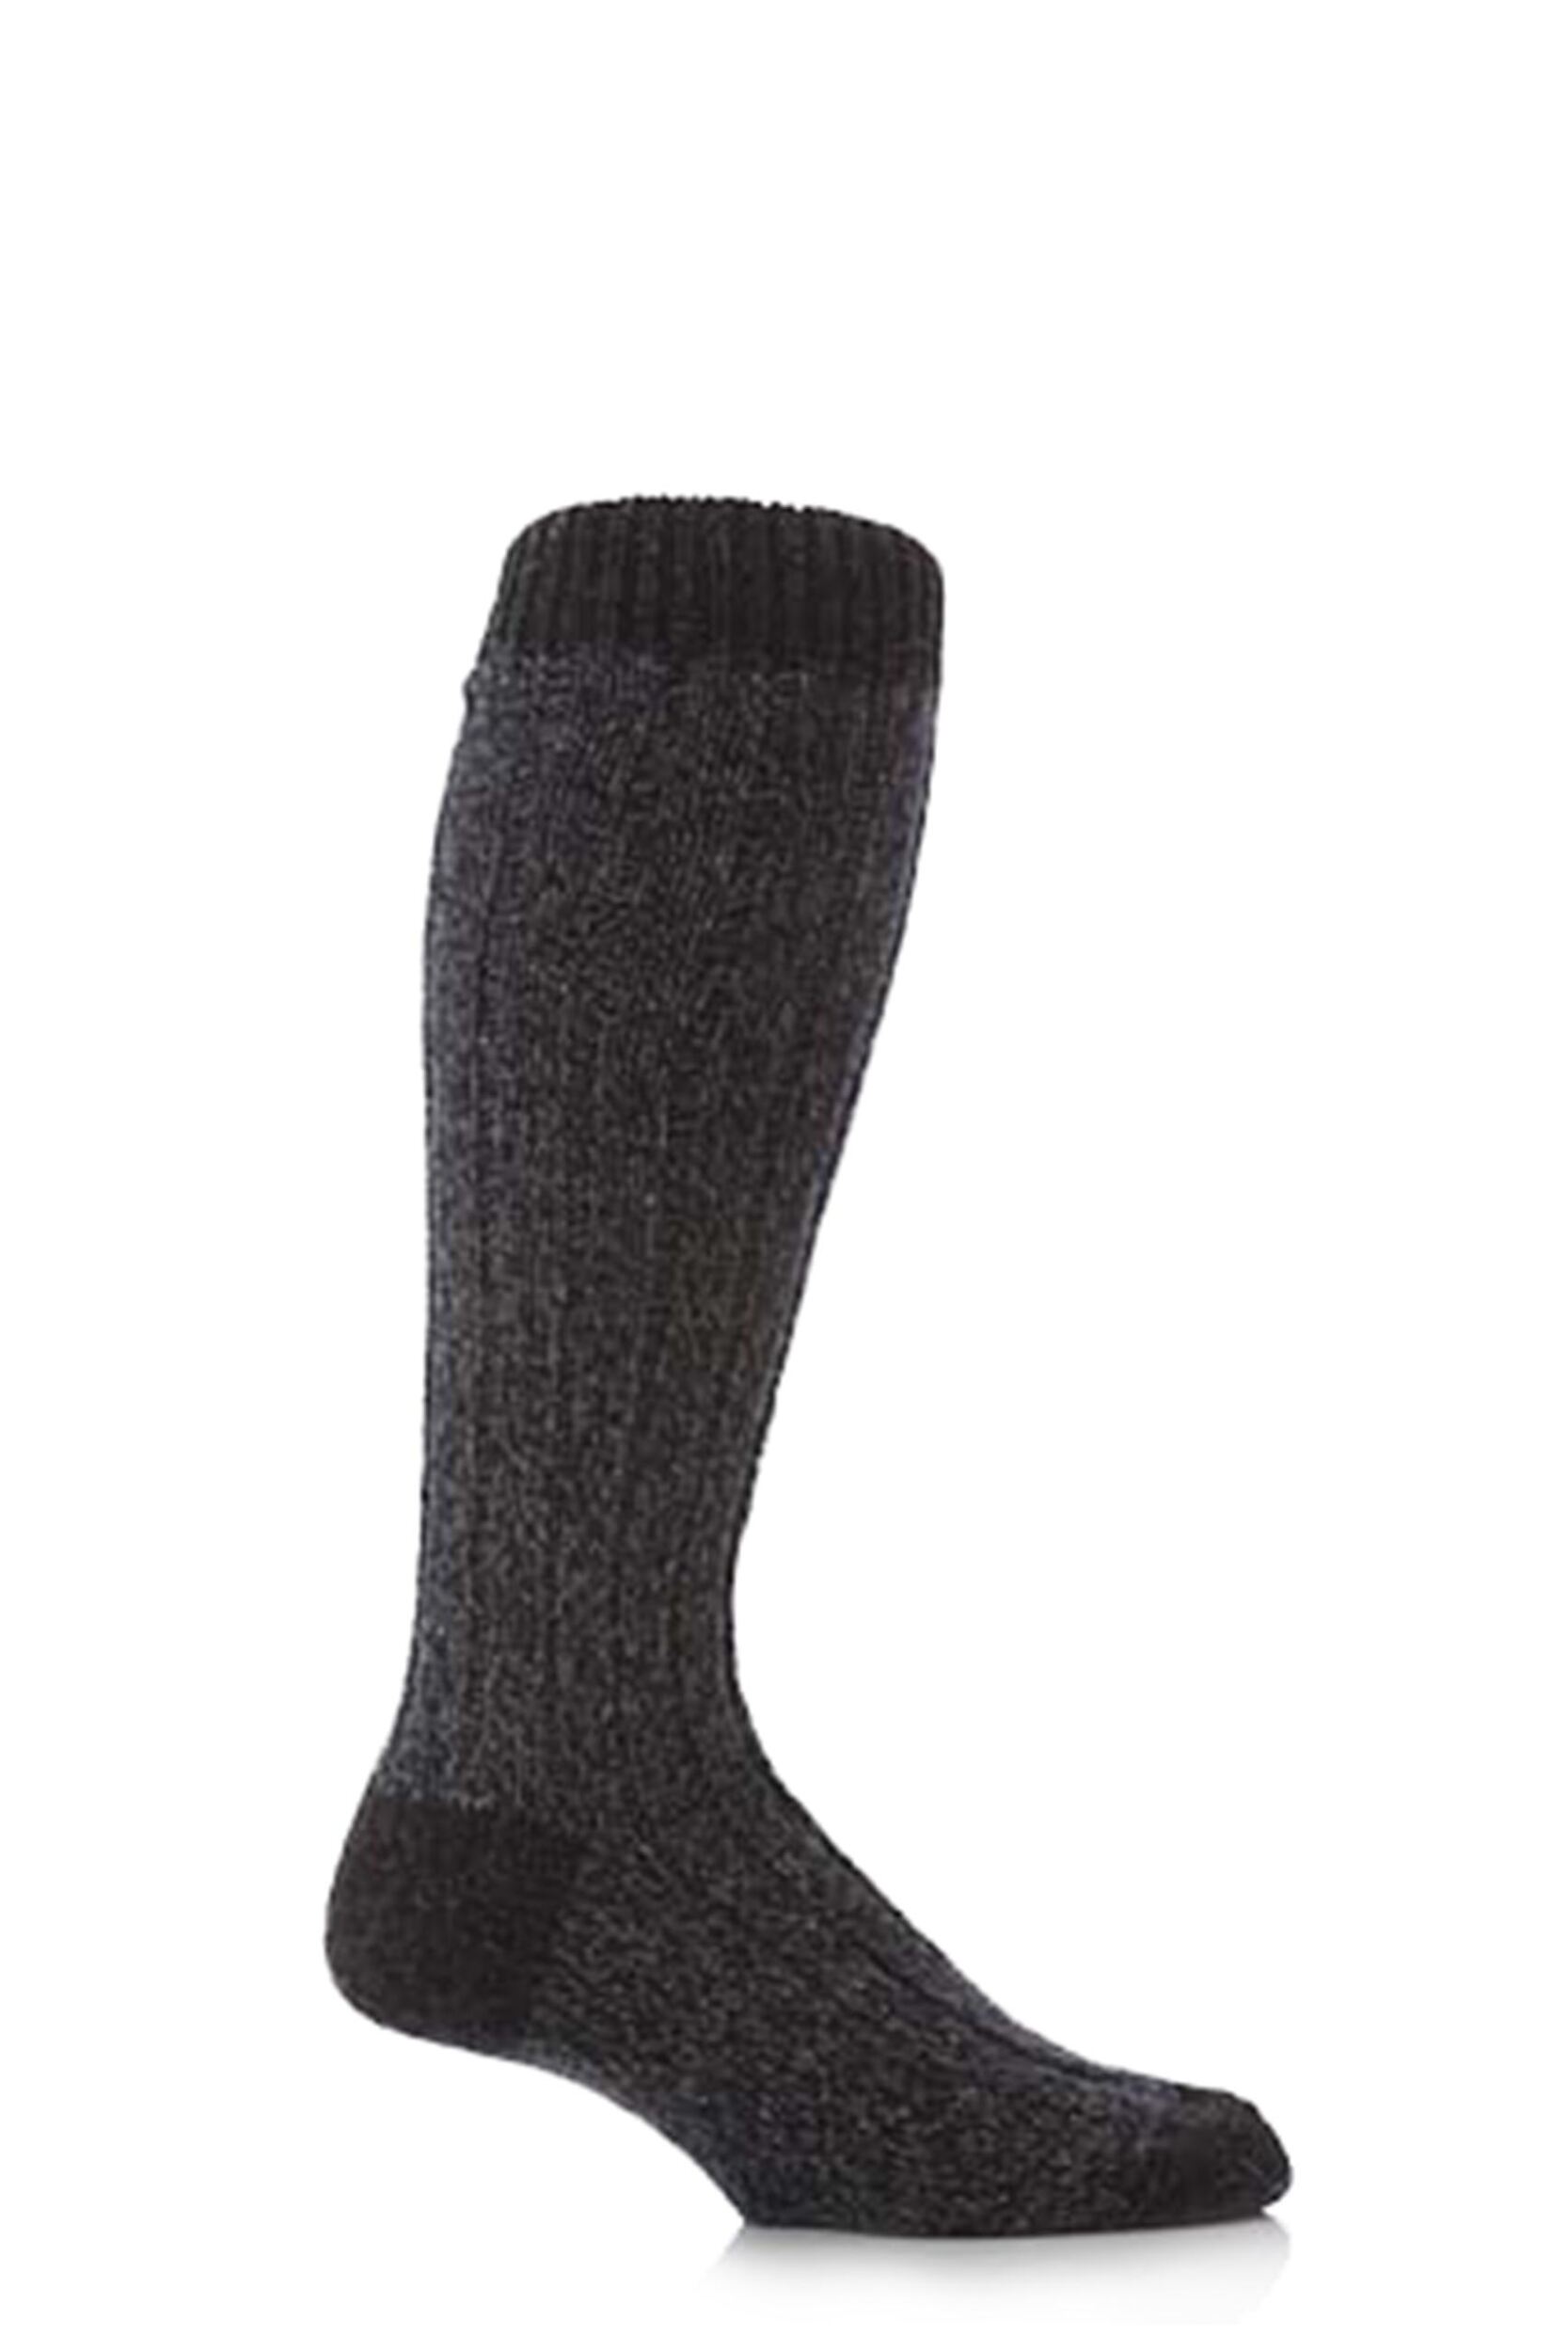 Mens 1 Pair Workforce Wool Rich Heavy Knee High Walking Socks | eBay